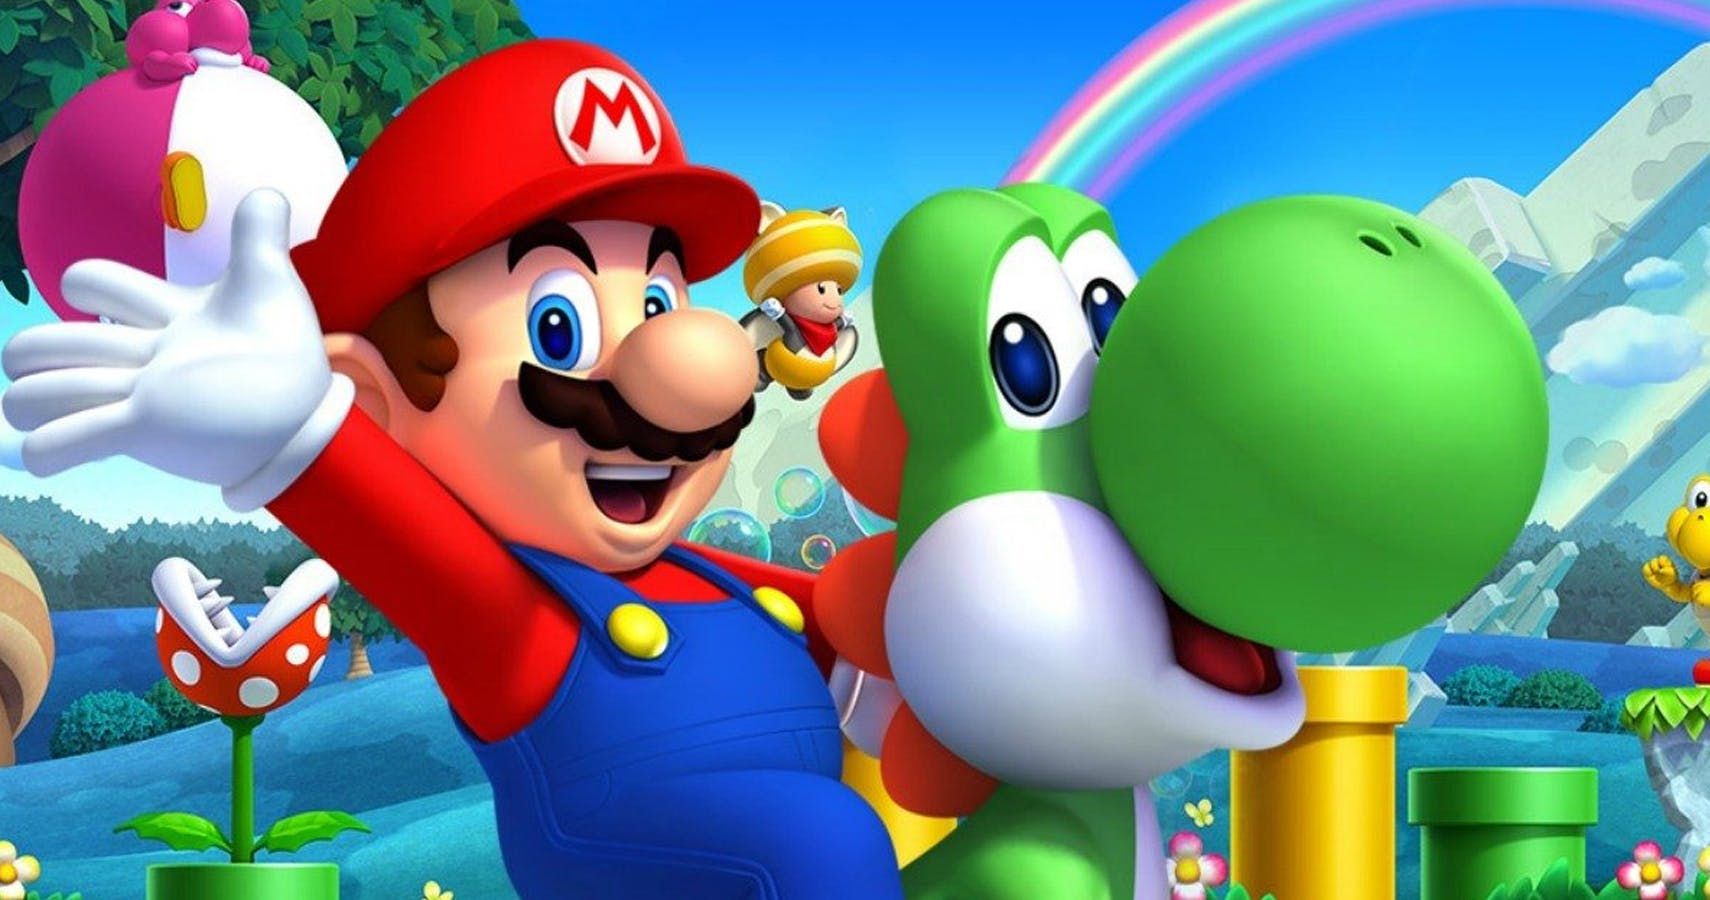 Включи супер марио бразерс. New super Mario Bros. Игра. Super Mario Bros 35 Nintendo Switch. Mario 1999. Марио (персонаж игр).